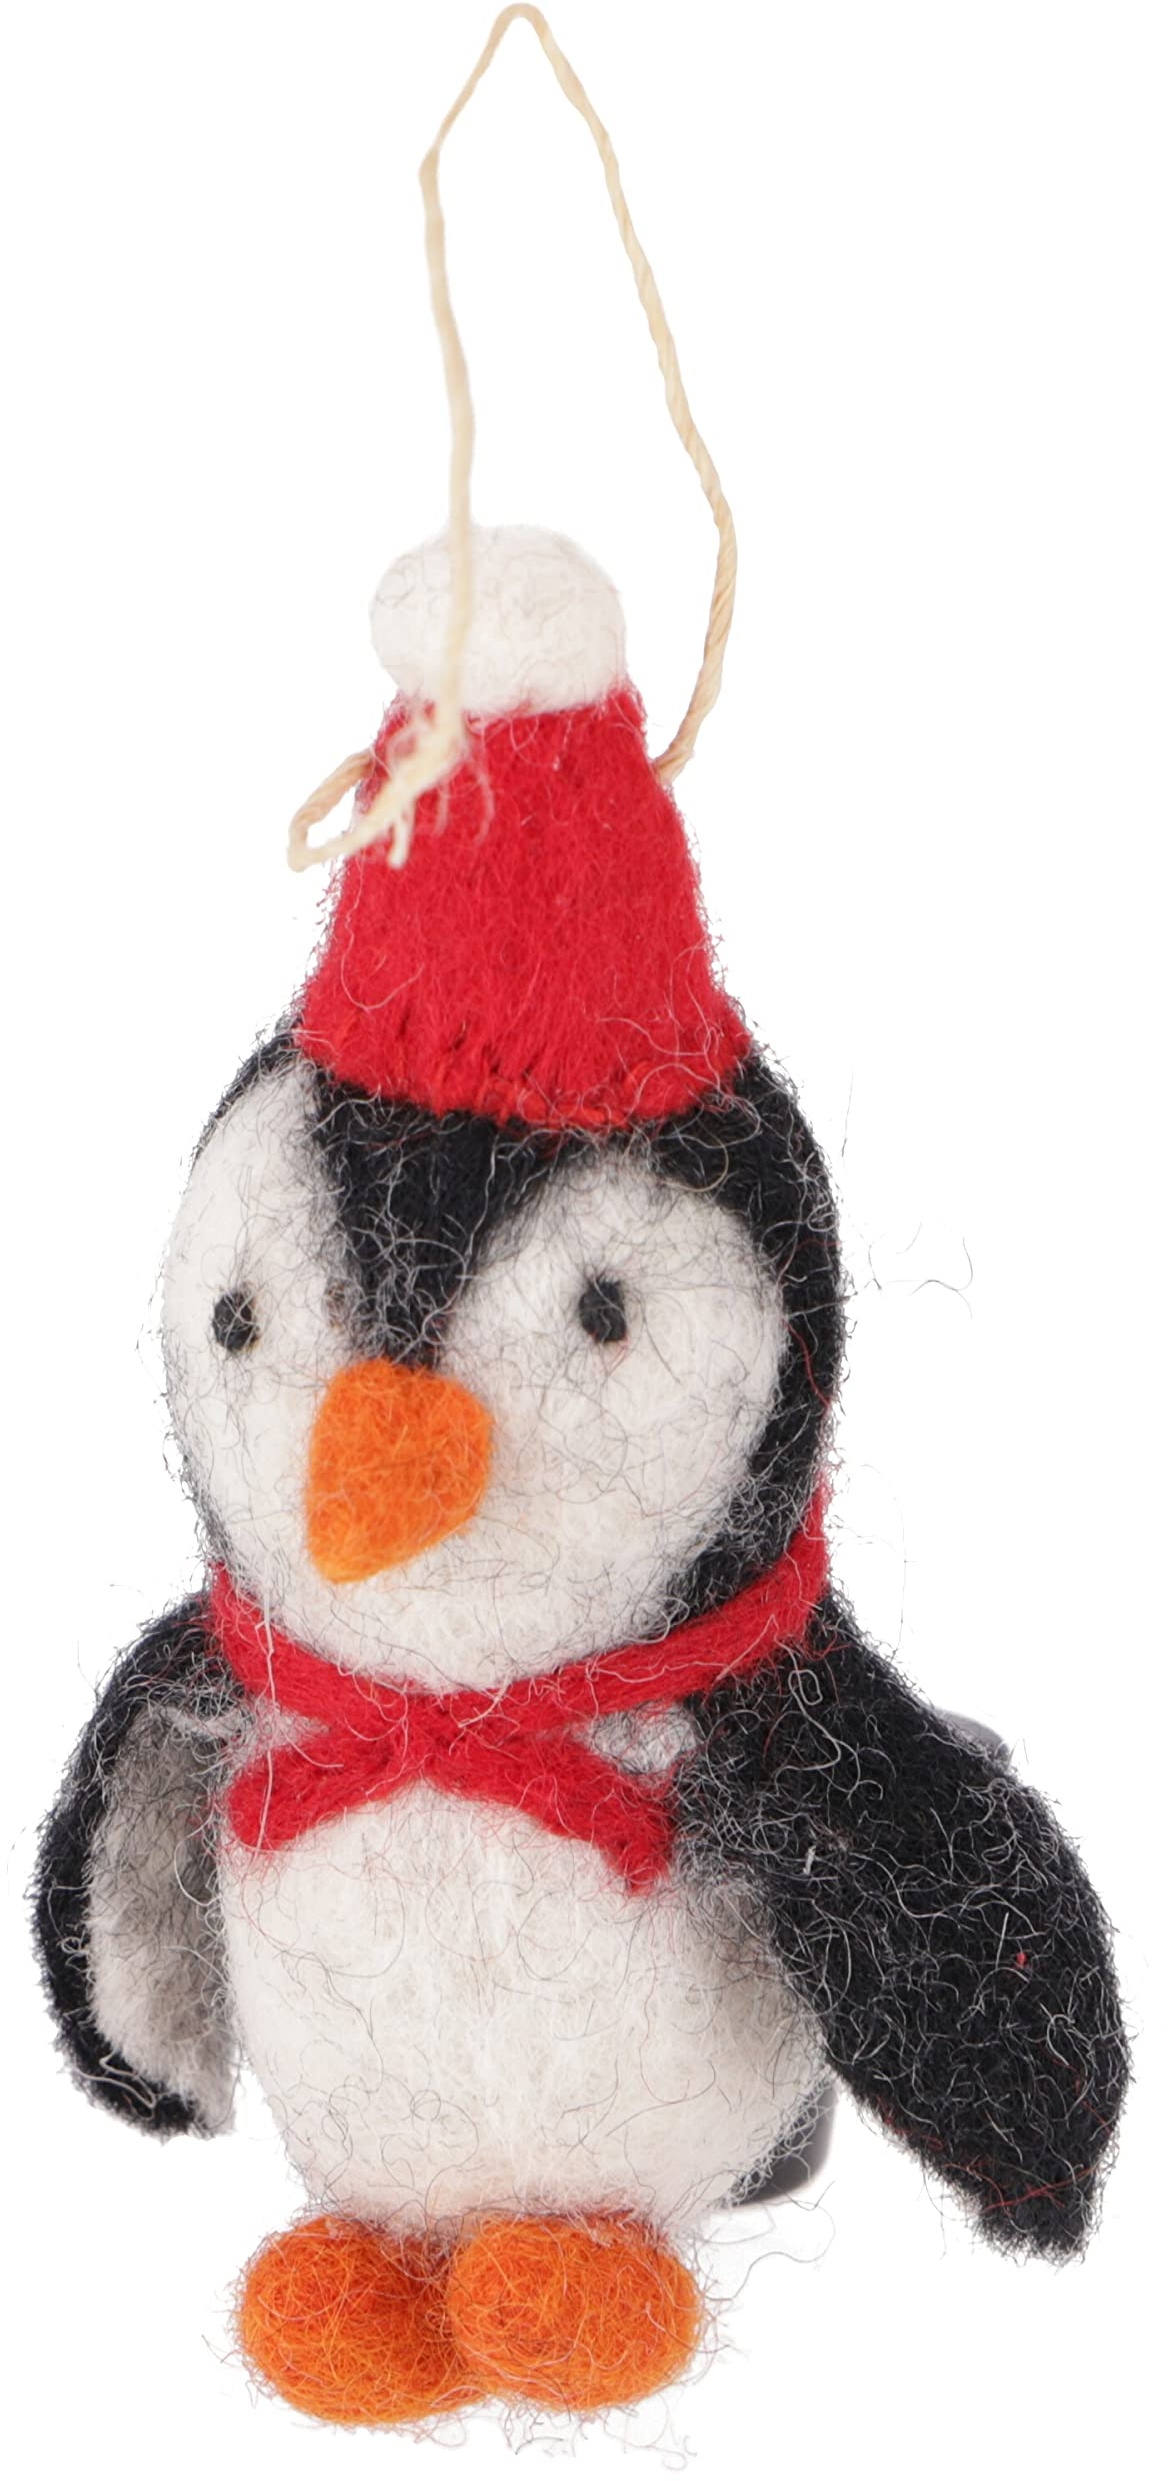 GURU SHOP Weihnachtsschmuck, Filzdekoration, Handgemachte Tiere aus Filz, Weihnachtsbaum Baumbehang - Pinguin, Schwarz, Wolle, 10x4x4 cm, Weihnachtsdeko